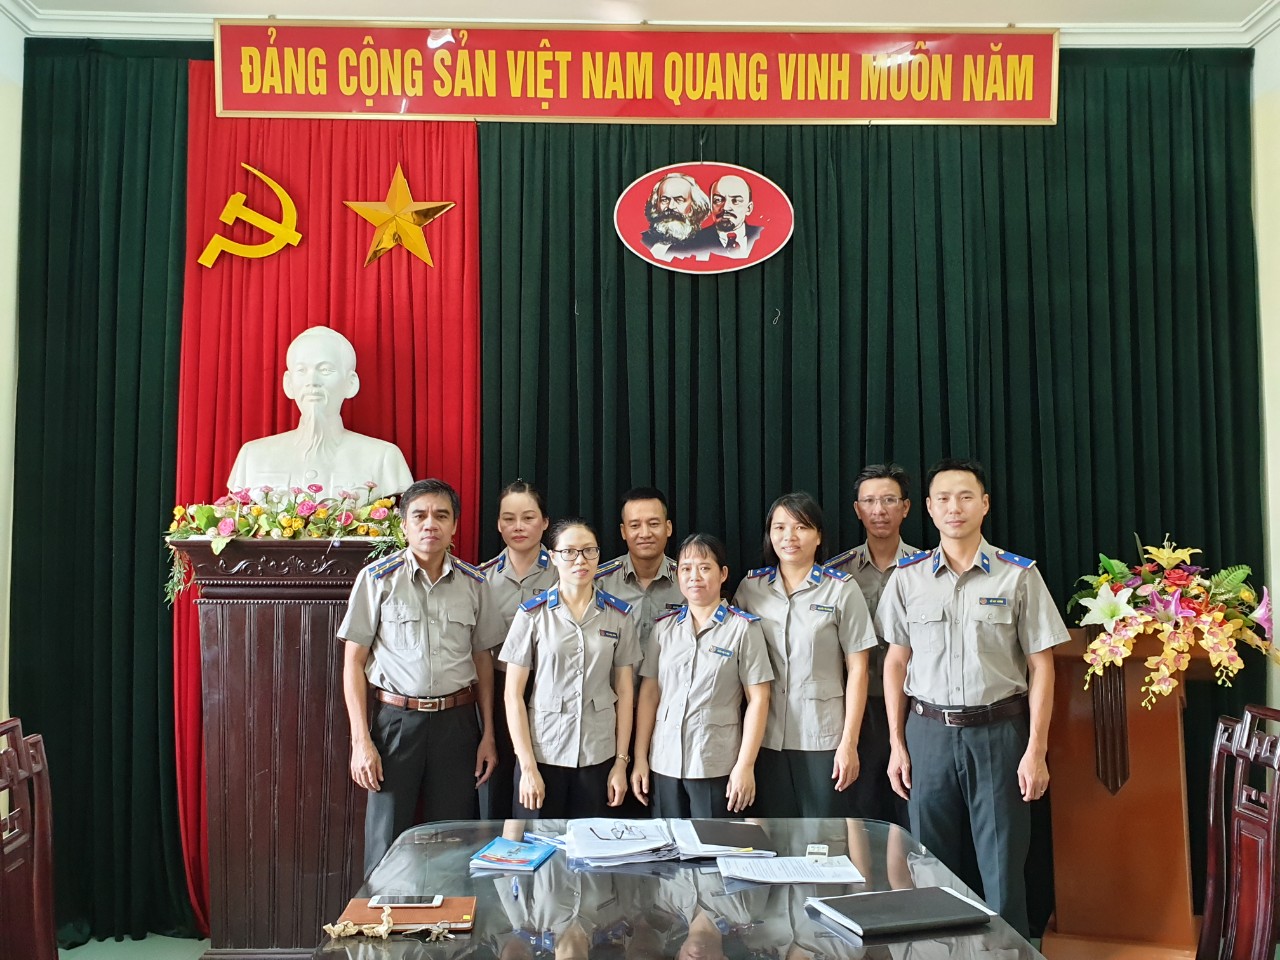 Chi cục Thi hành án dân sự huyện Quỳnh Phụ - đơn vị điển hình của Hệ thống Thi hành án dân sự tỉnh Thái Bình